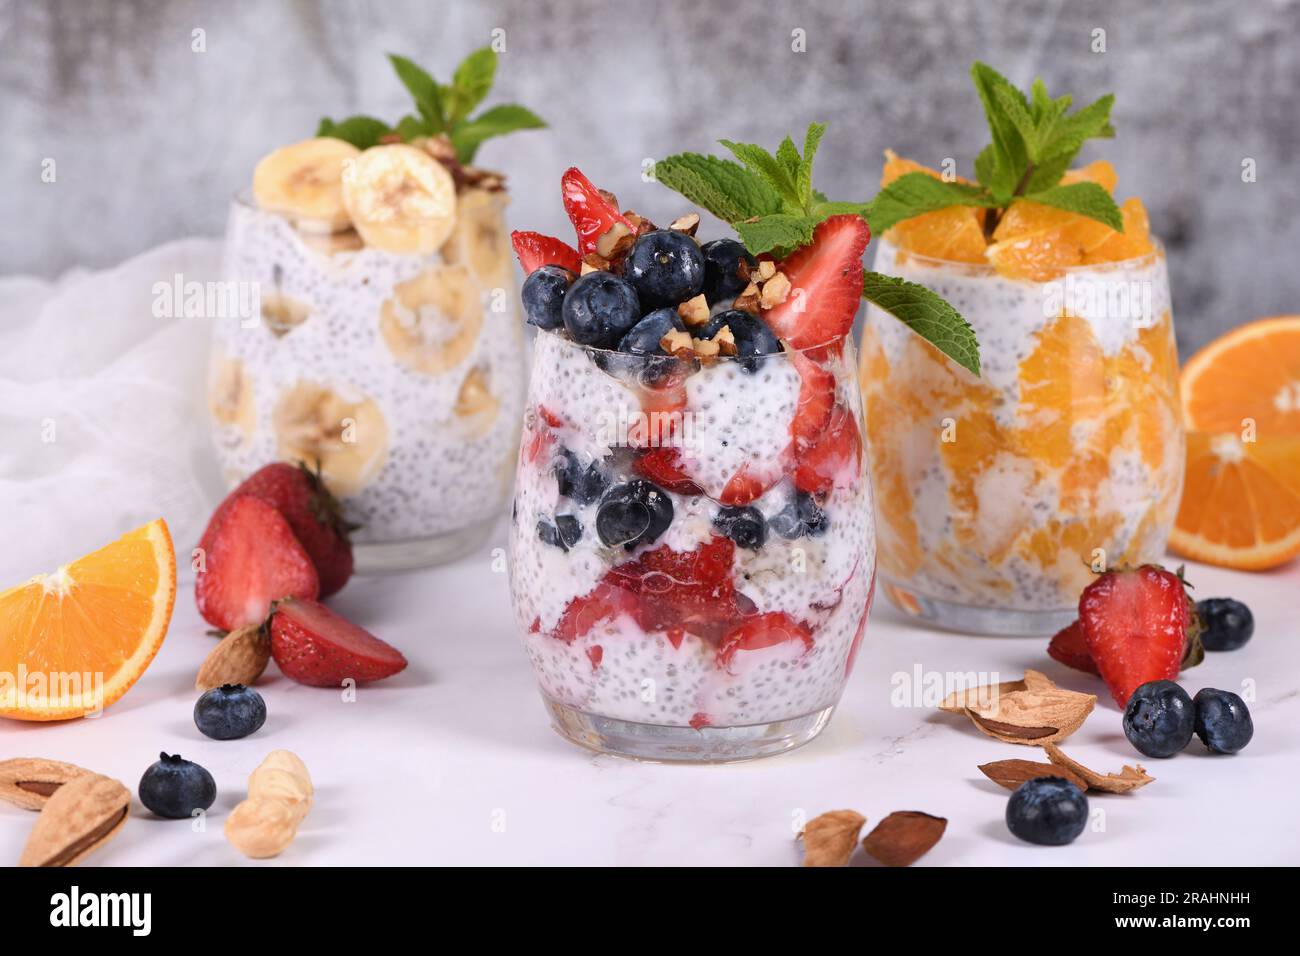 Questo Chia Pudding è fatto con yogurt greco e pezzi di frutta e miele. È deliziosamente cremoso, sano, e molto veloce e facile da fare. Il perfec Foto Stock